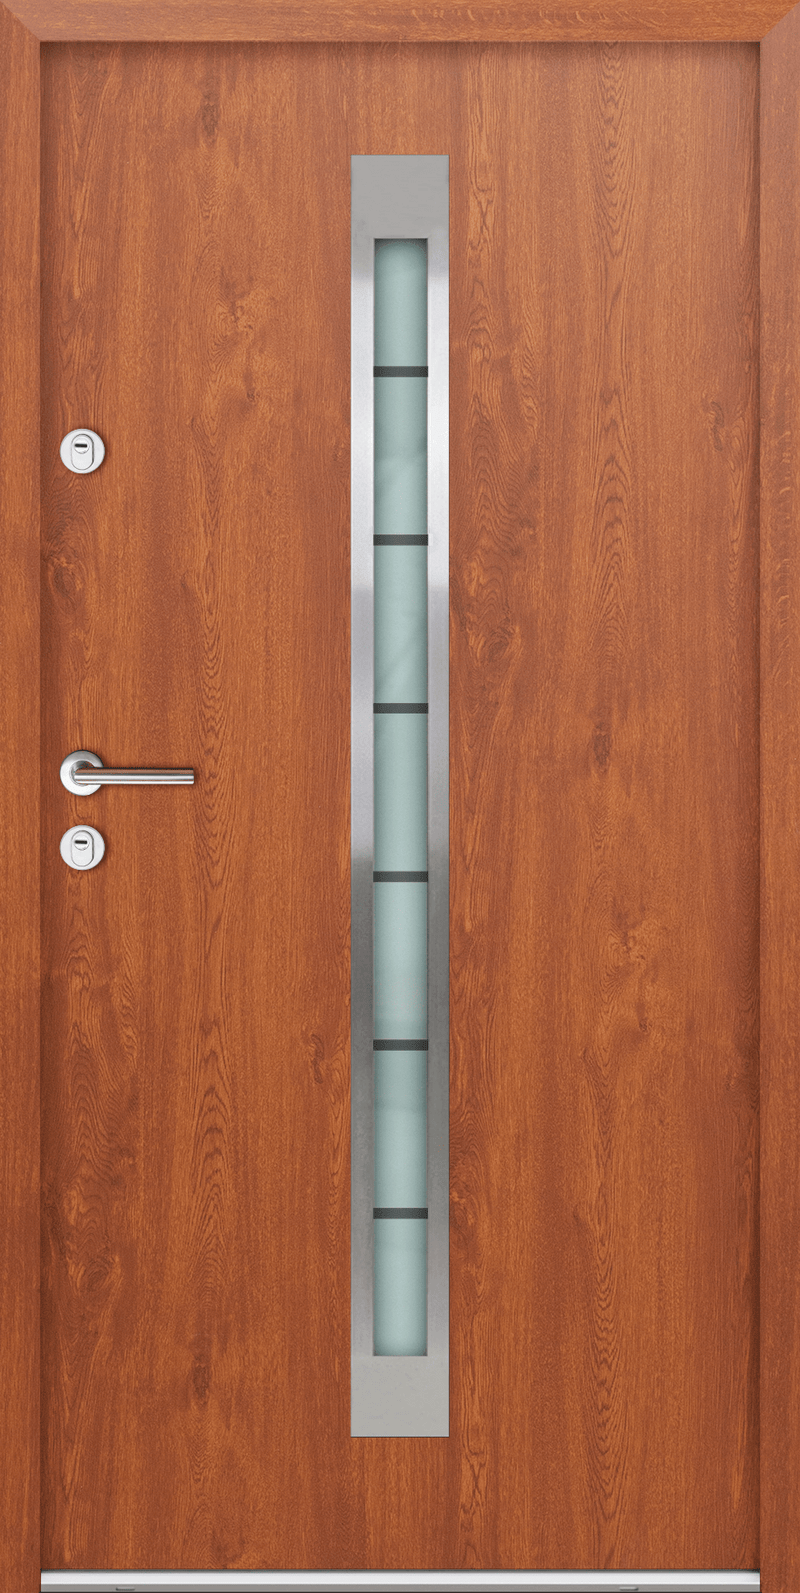 Turenwerke ATU 68 Design 20 Steel Door - Golden Oak